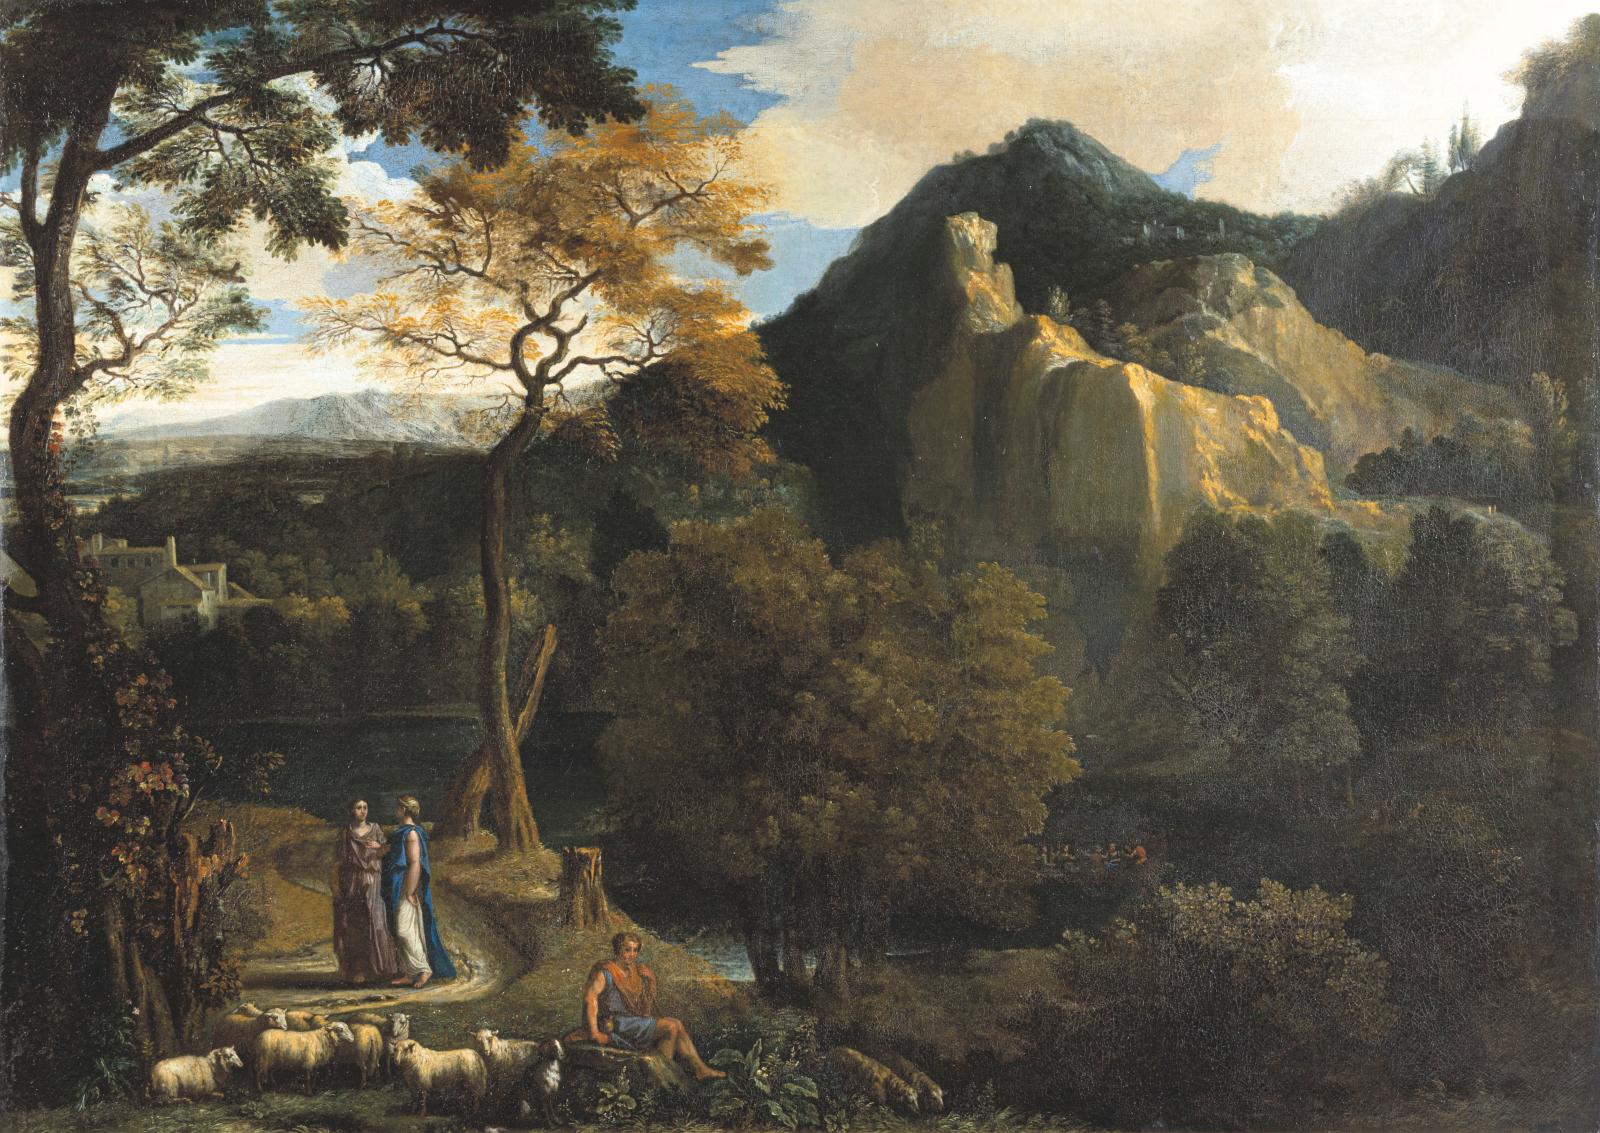 Un paysage classique d’Abraham Genoels